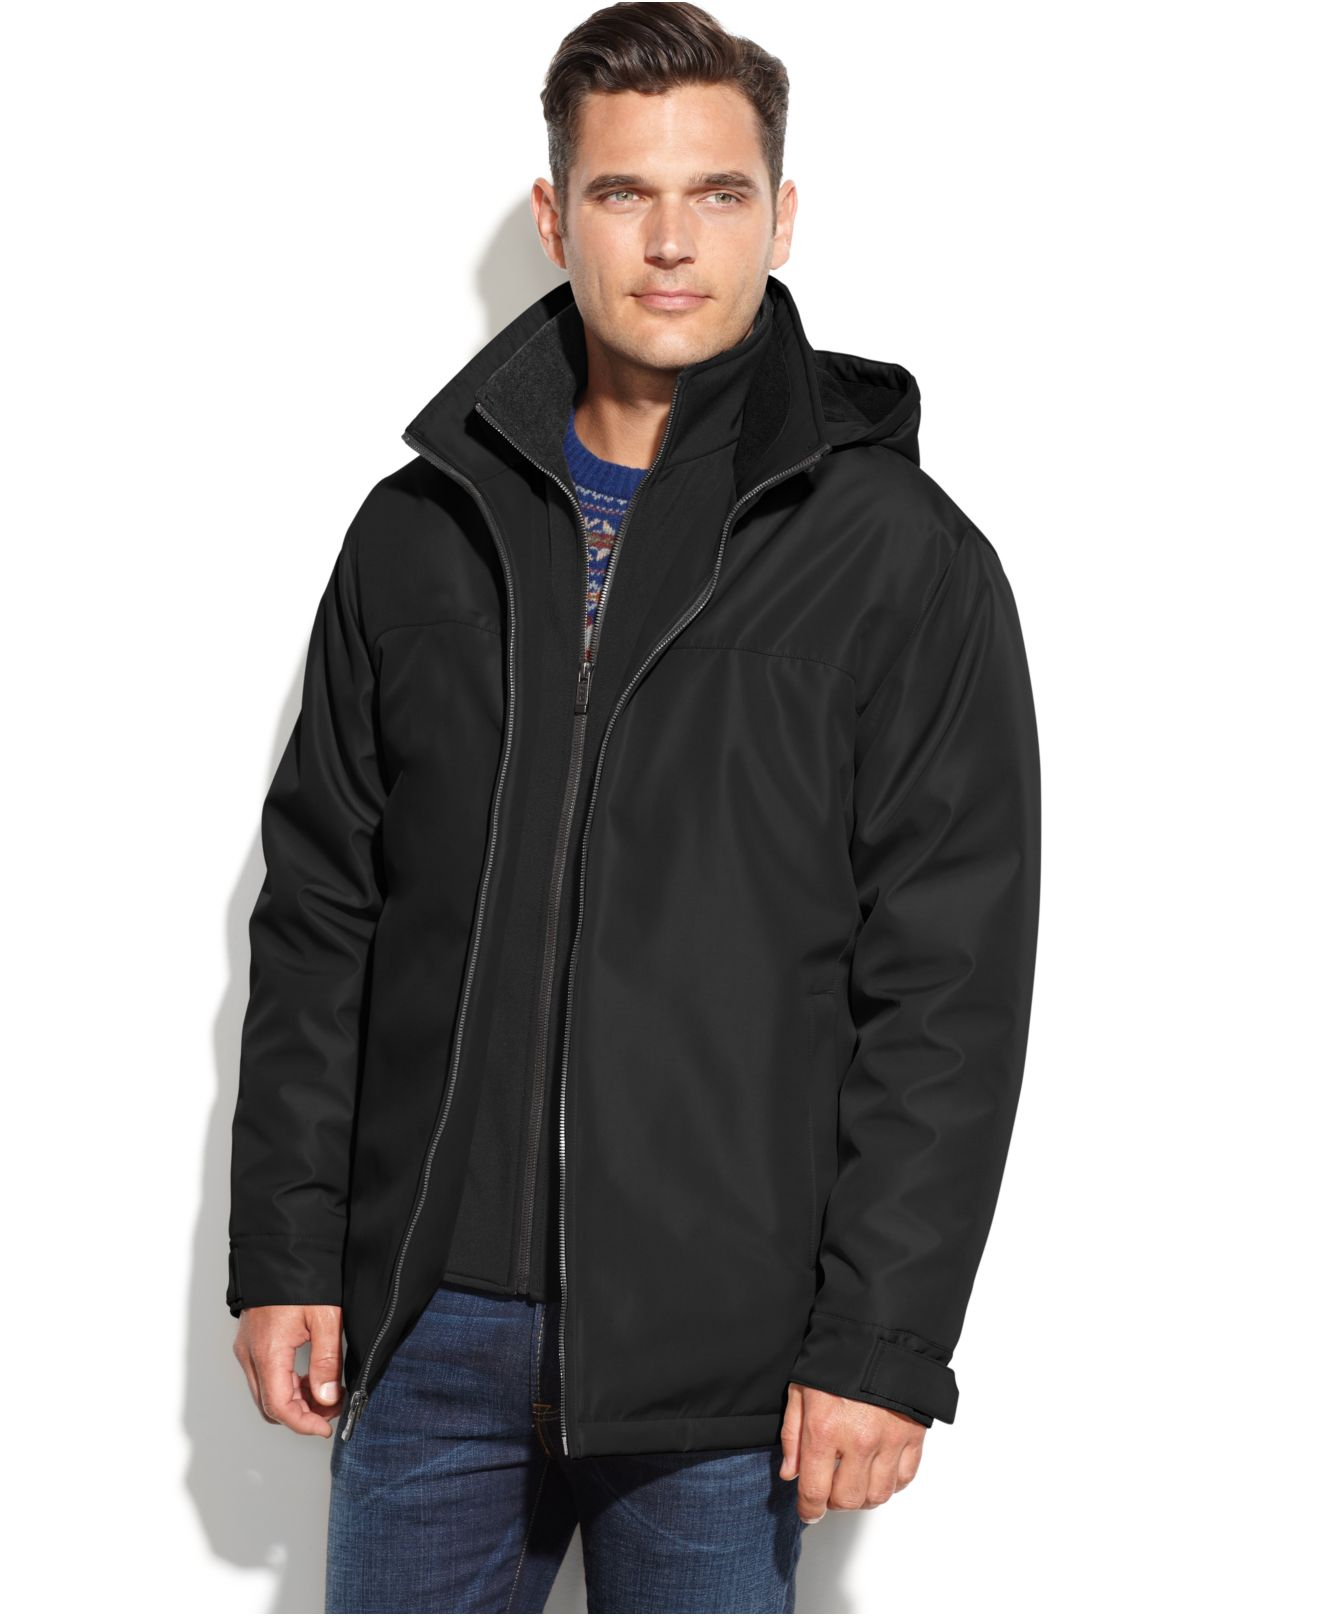 Lyst - Weatherproof Ultra Tech Hooded Jacket With Bib in Black for Men